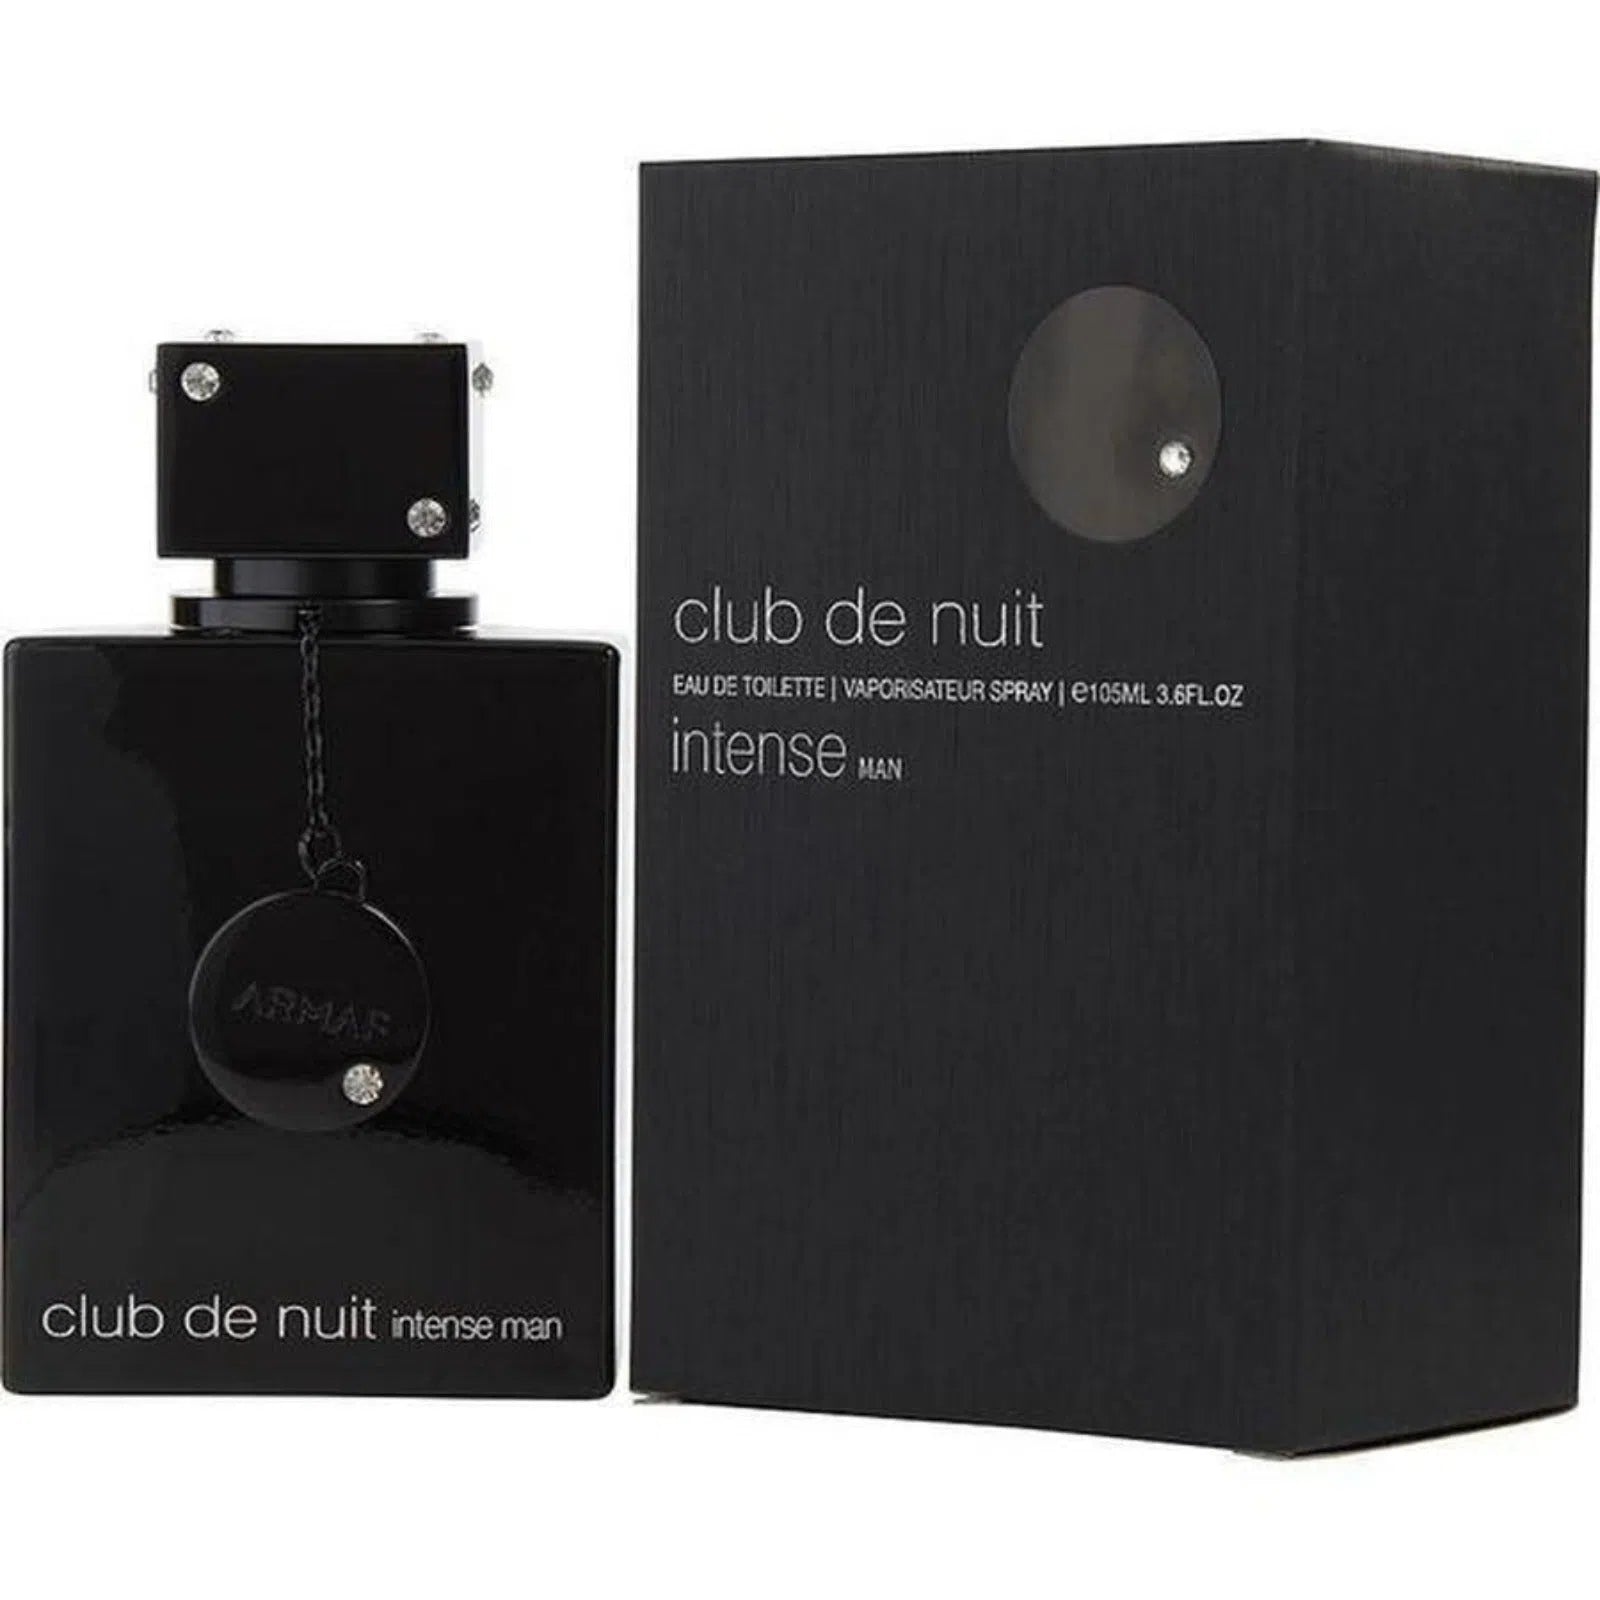 Perfume Armaf Club de Nuit Intense EDT (M) / 105 ml - 6085010044712- Prive Perfumes Honduras